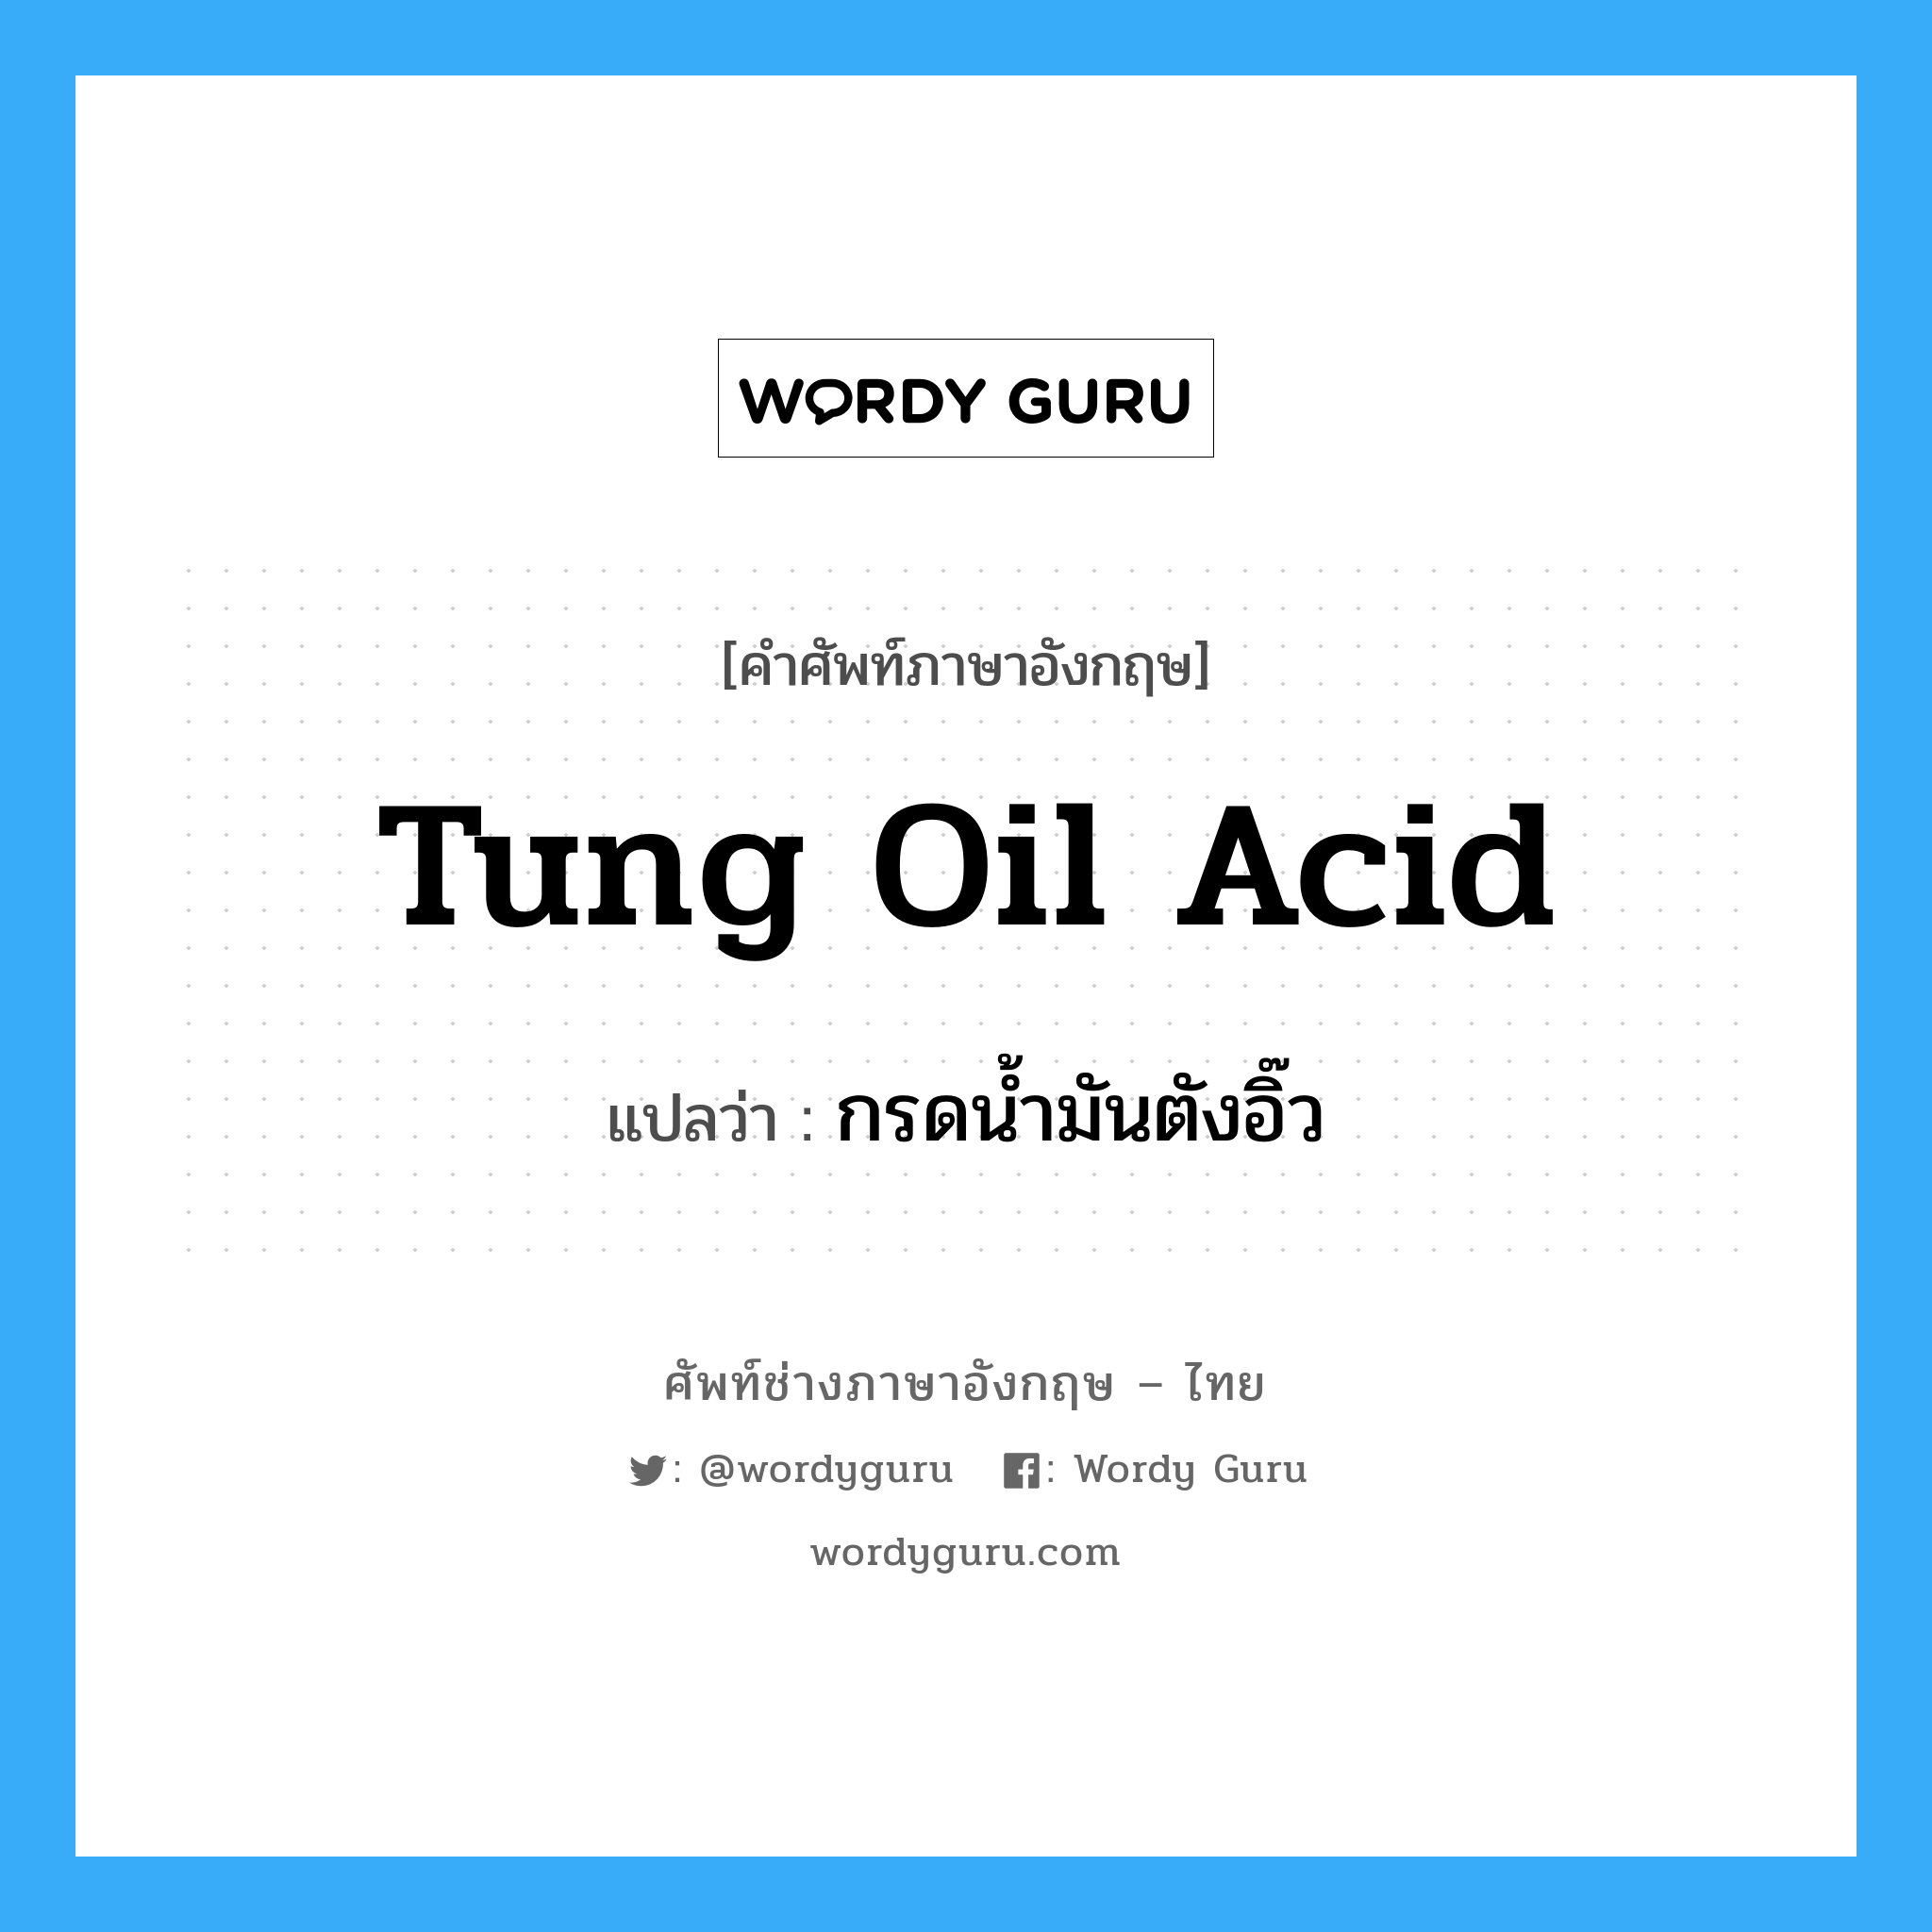 tung oil acid แปลว่า?, คำศัพท์ช่างภาษาอังกฤษ - ไทย tung oil acid คำศัพท์ภาษาอังกฤษ tung oil acid แปลว่า กรดน้ำมันตังอิ๊ว